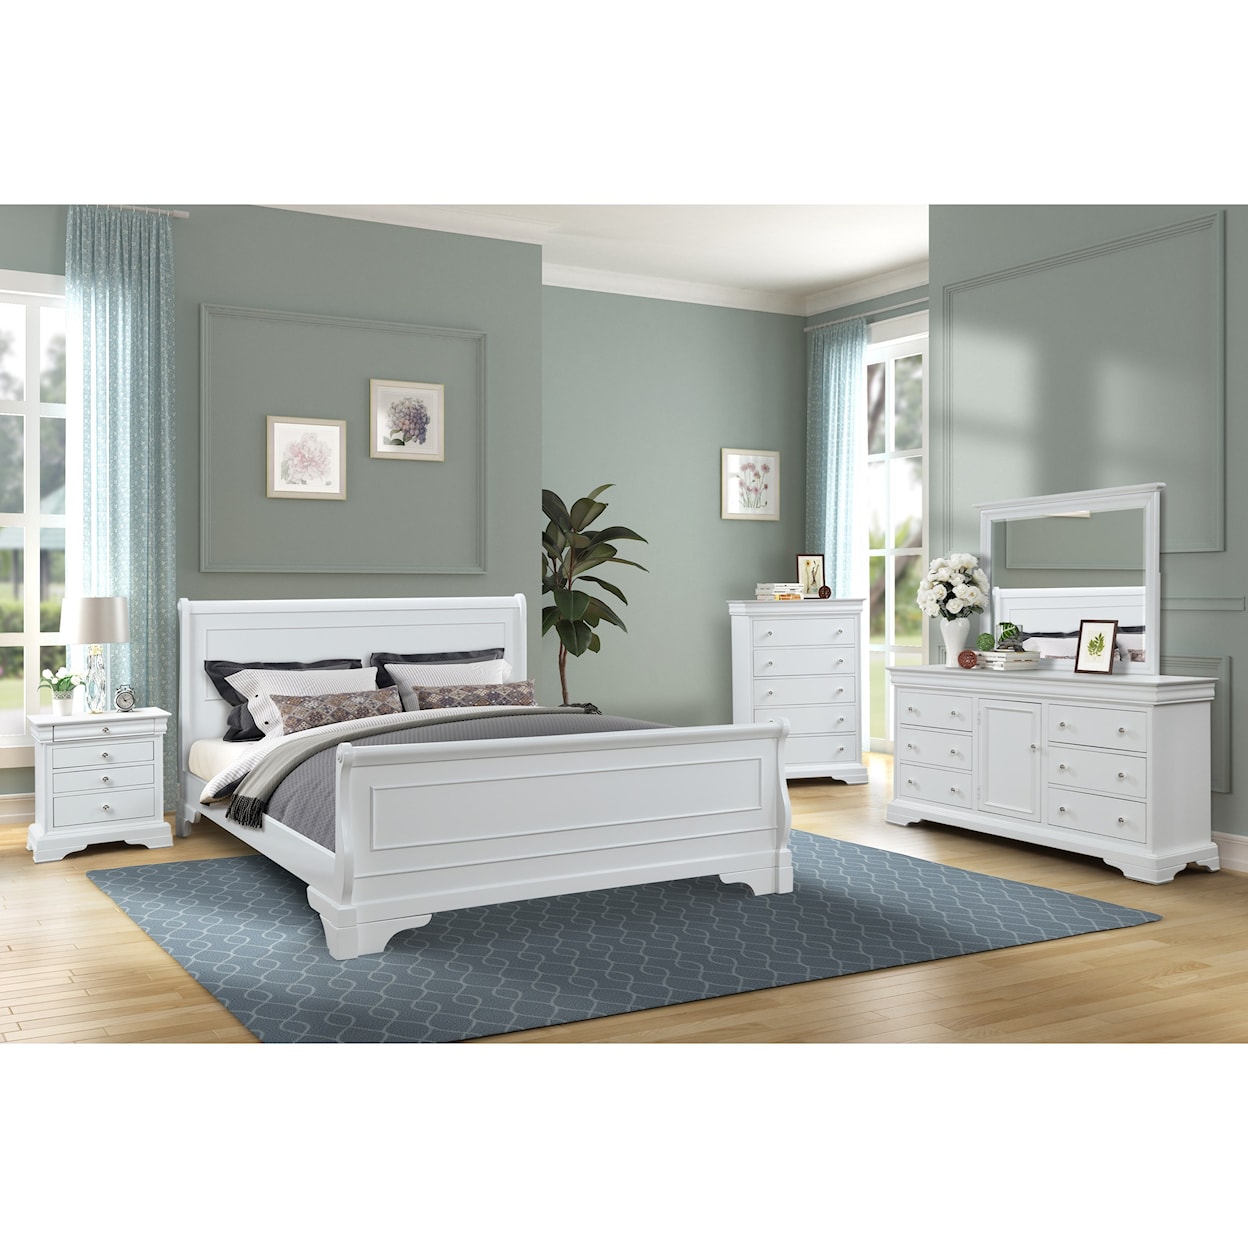 New Classic Furniture Versaille Queen Bedroom Group